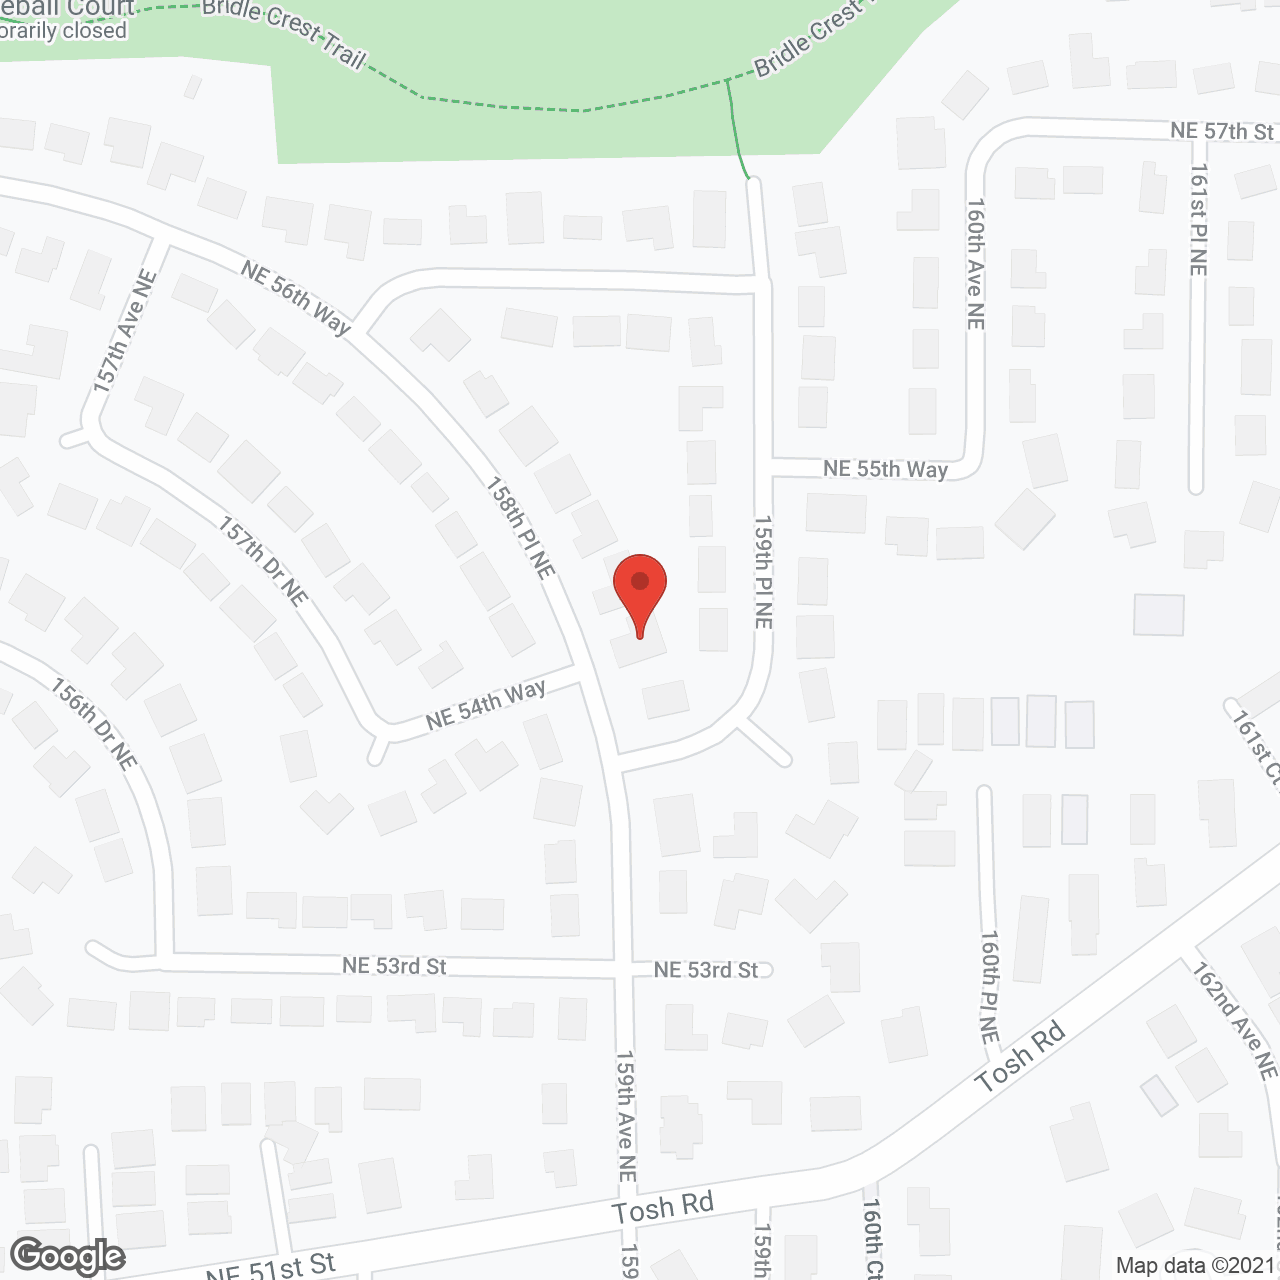 Viewridge Eastside Corp in google map